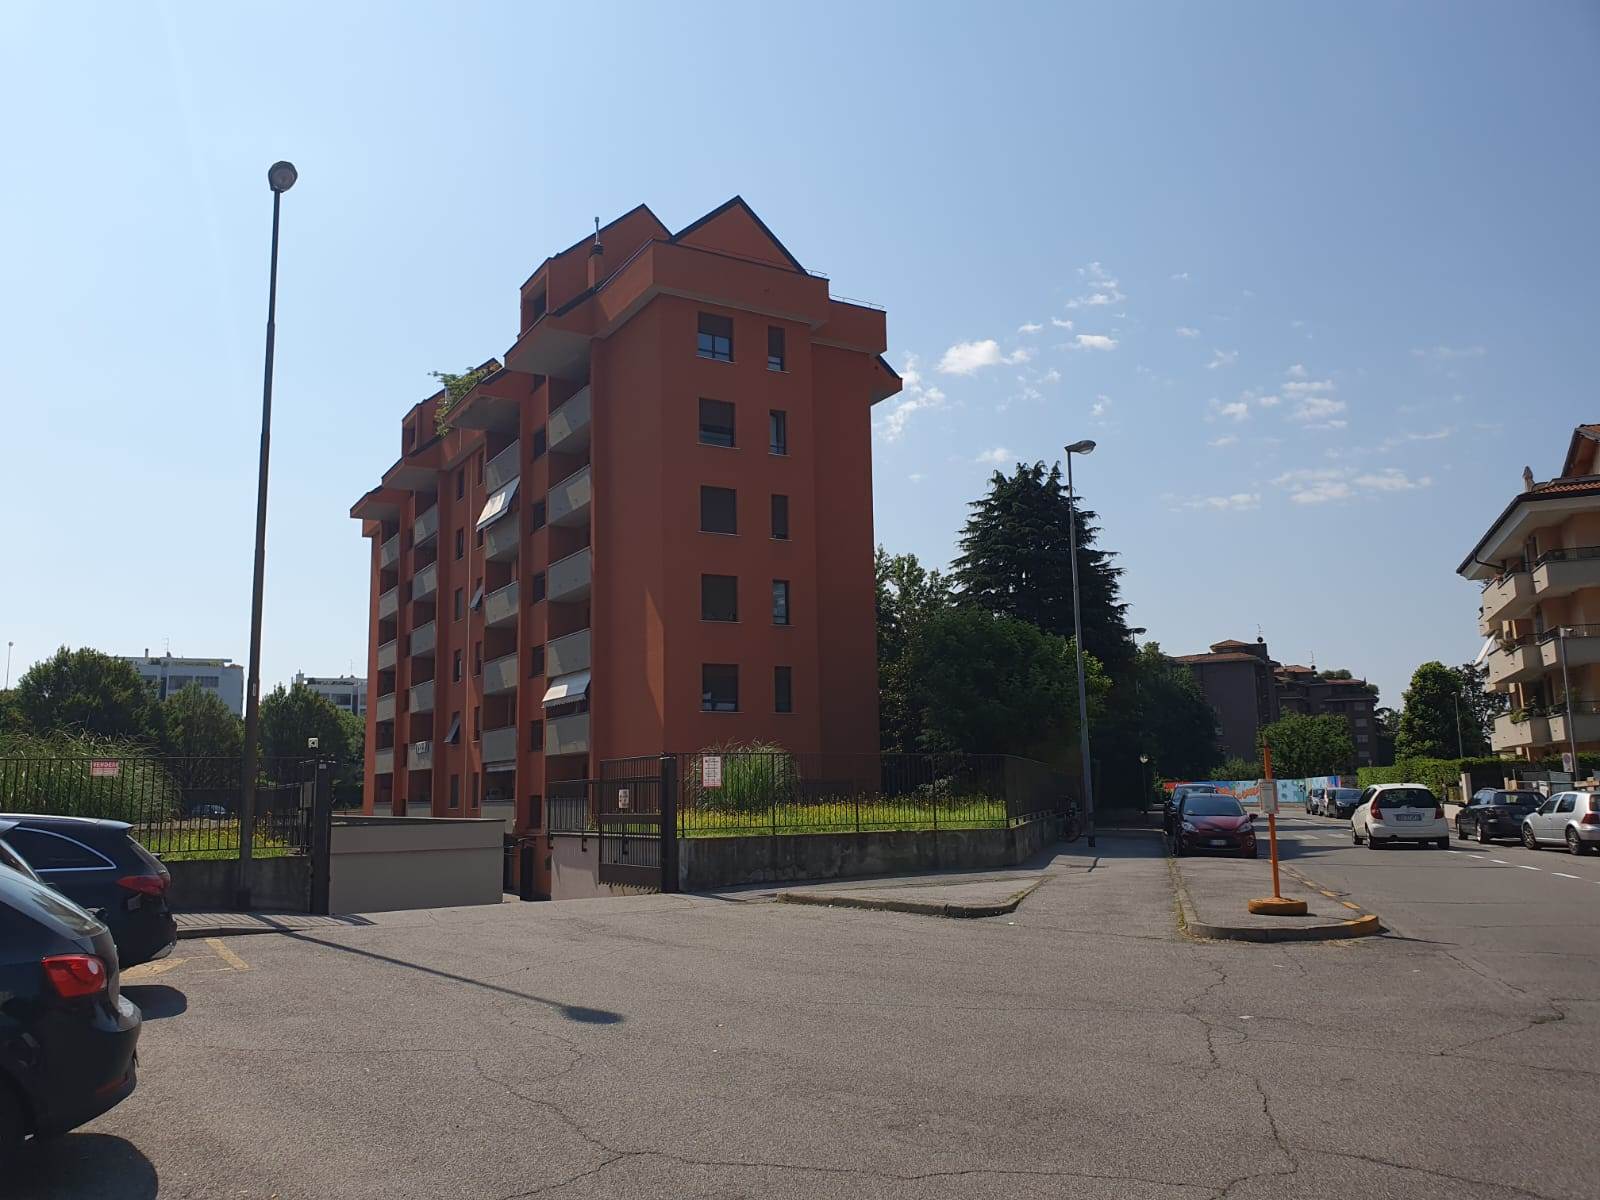 Rif 4/131 L'Abbruzzi Gruppo Immobiliare propone in Monza, zona San Fruttuoso, via Sorteni, in contesto residenziale signorile, box singolo di mq.14 